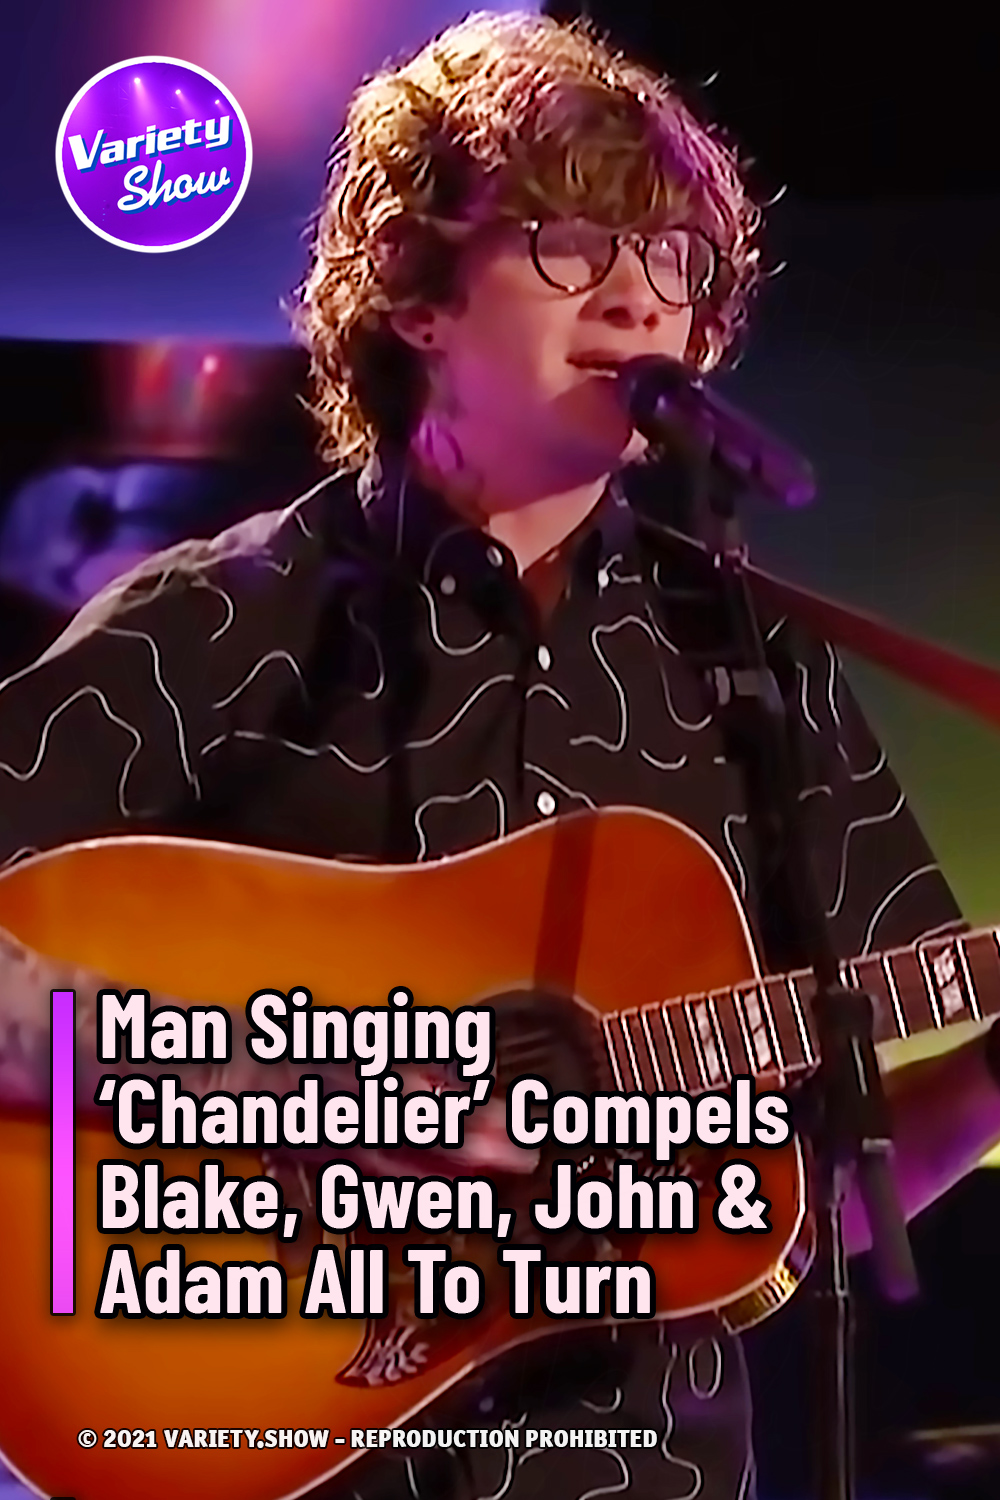 Man Singing ‘Chandelier’ Compels Blake, Gwen, John & Adam All To Turn